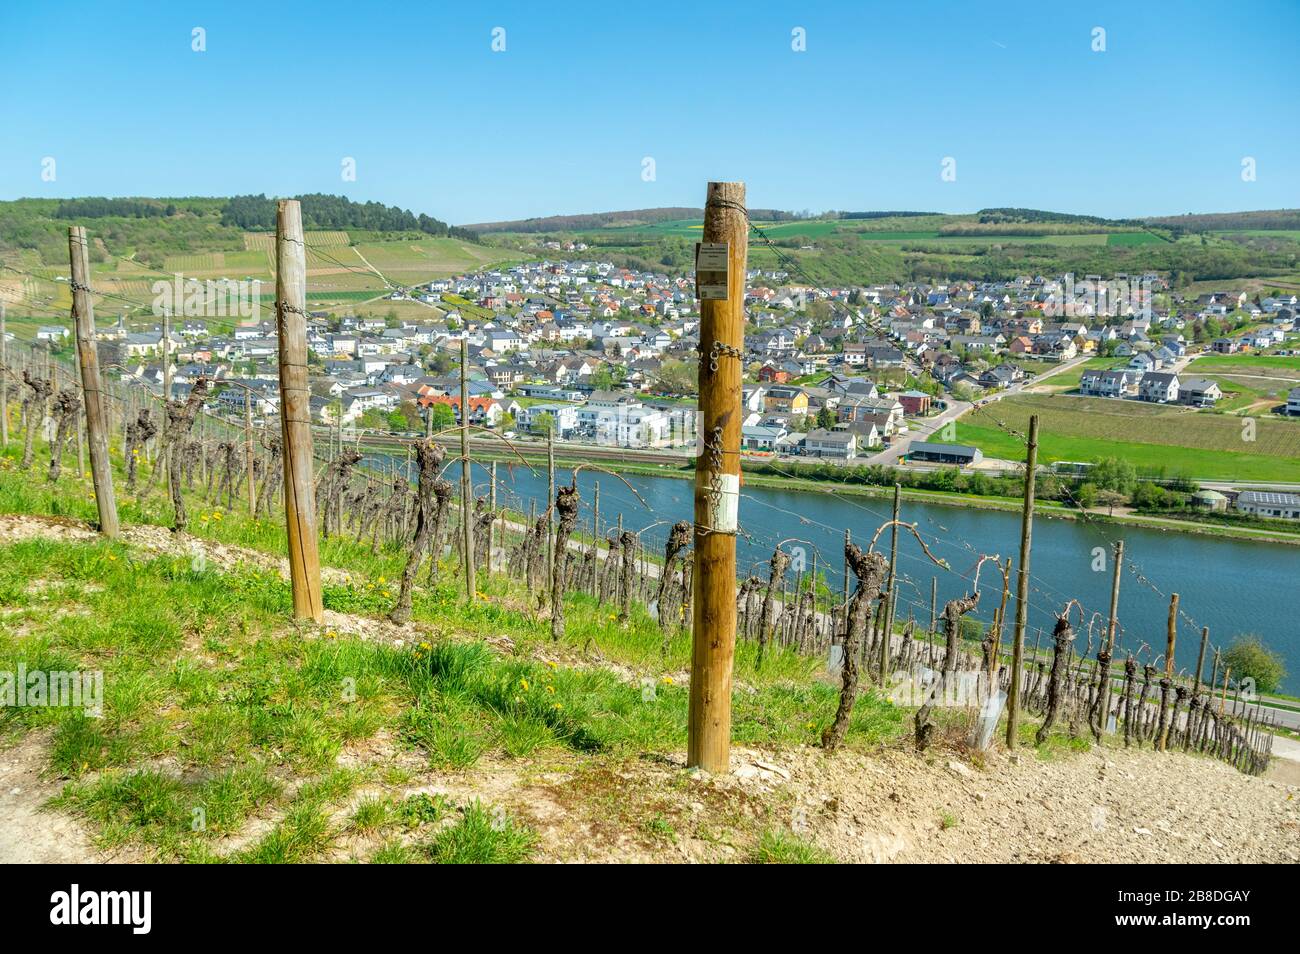 Village de Nittel (Allemagne) entre les vignobles de la vallée de la Moselle, avec des champs tout autour, vu du Luxembourg en face de la frontière Banque D'Images